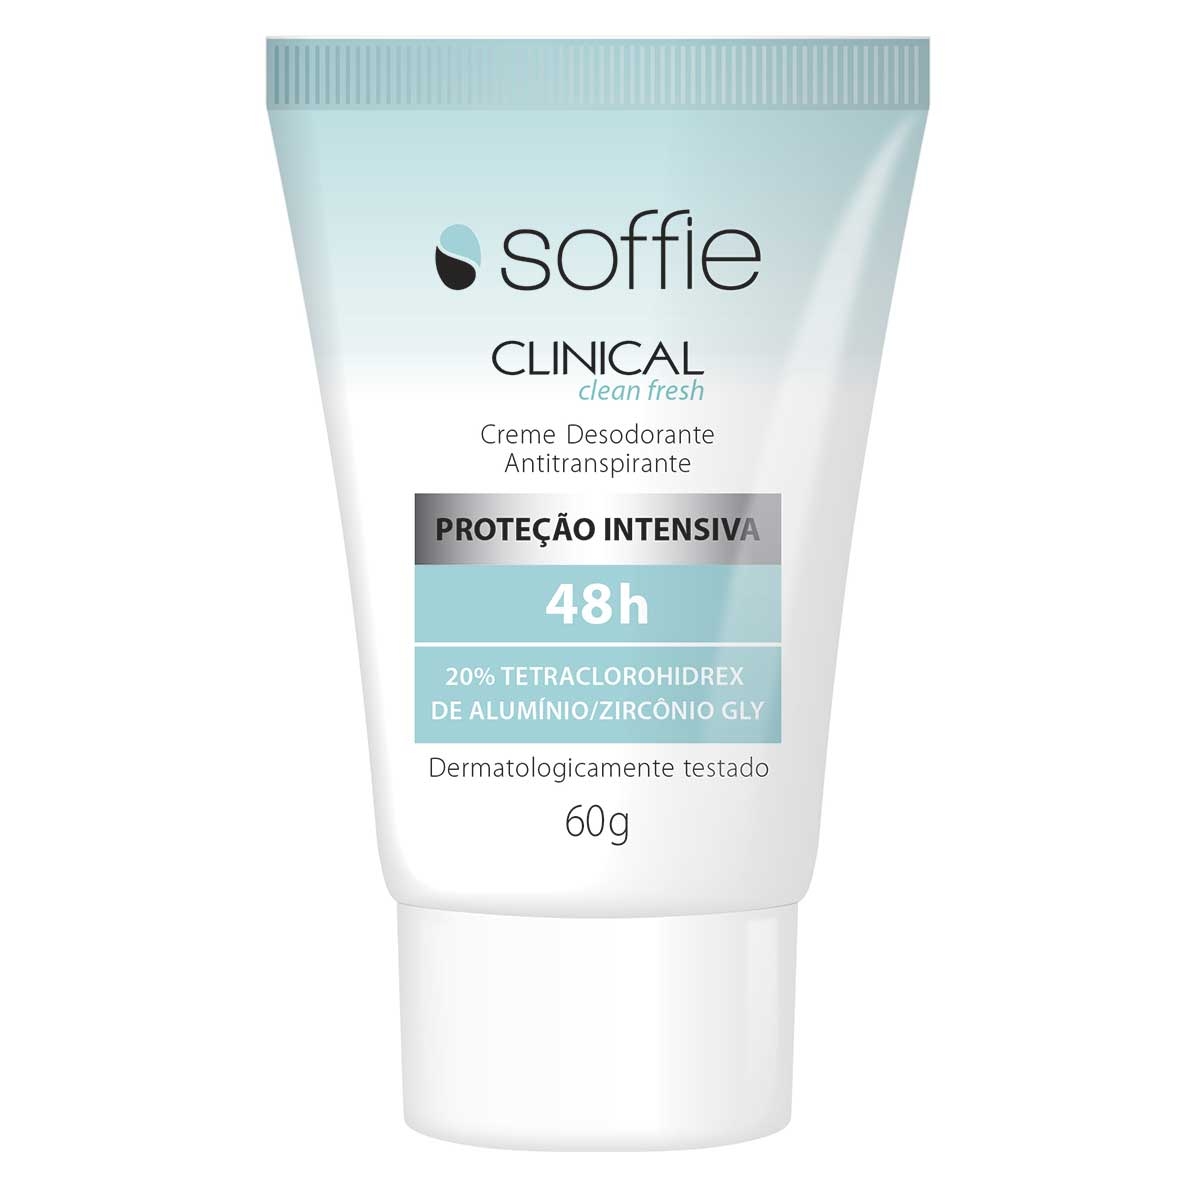 Creme Desodorante Antitranspirante Soffie Clinical Clean Fresh 48h com 60g 60g